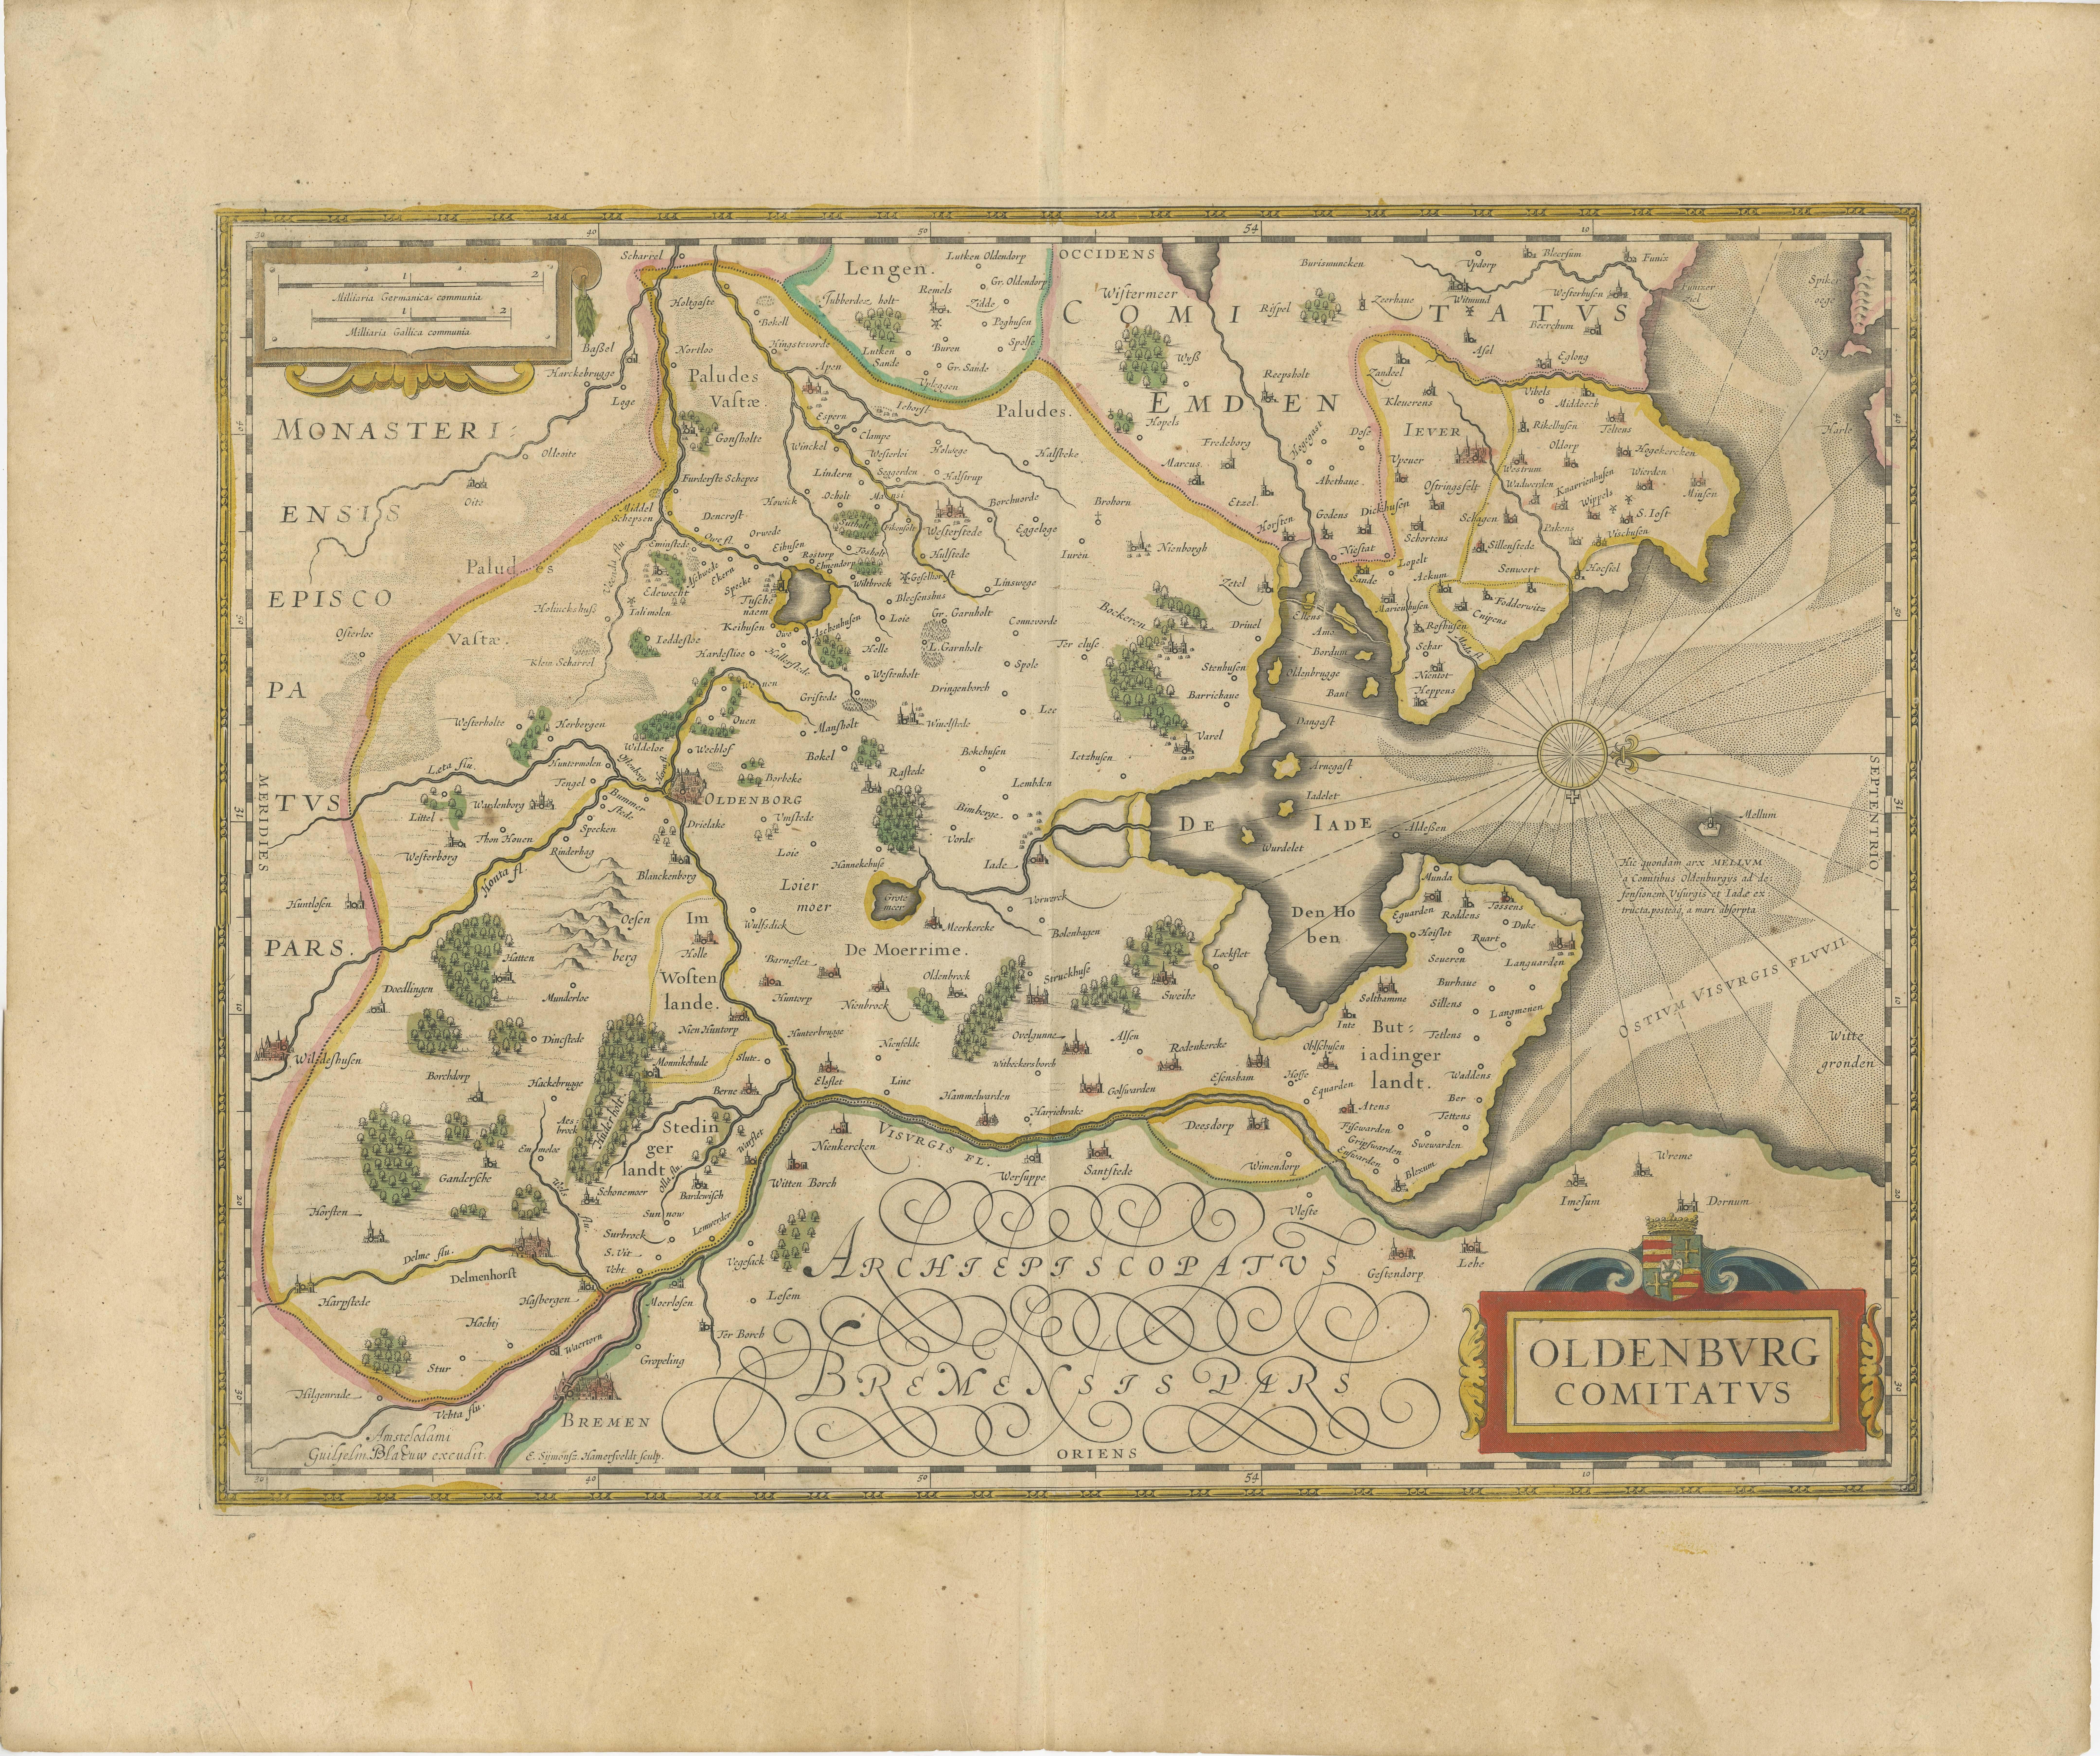 Antike Karte mit dem Titel 'Oldenburg Comitatus'. Detaillierte alte Karte von Oldenburg, Deutschland. Die Karte zeigt auch Bremen und die Jadebucht. Herausgegeben von W. Blaeu, um 1640. Willem Jansz. Blaeu und sein Sohn Joan Blaeu sind die